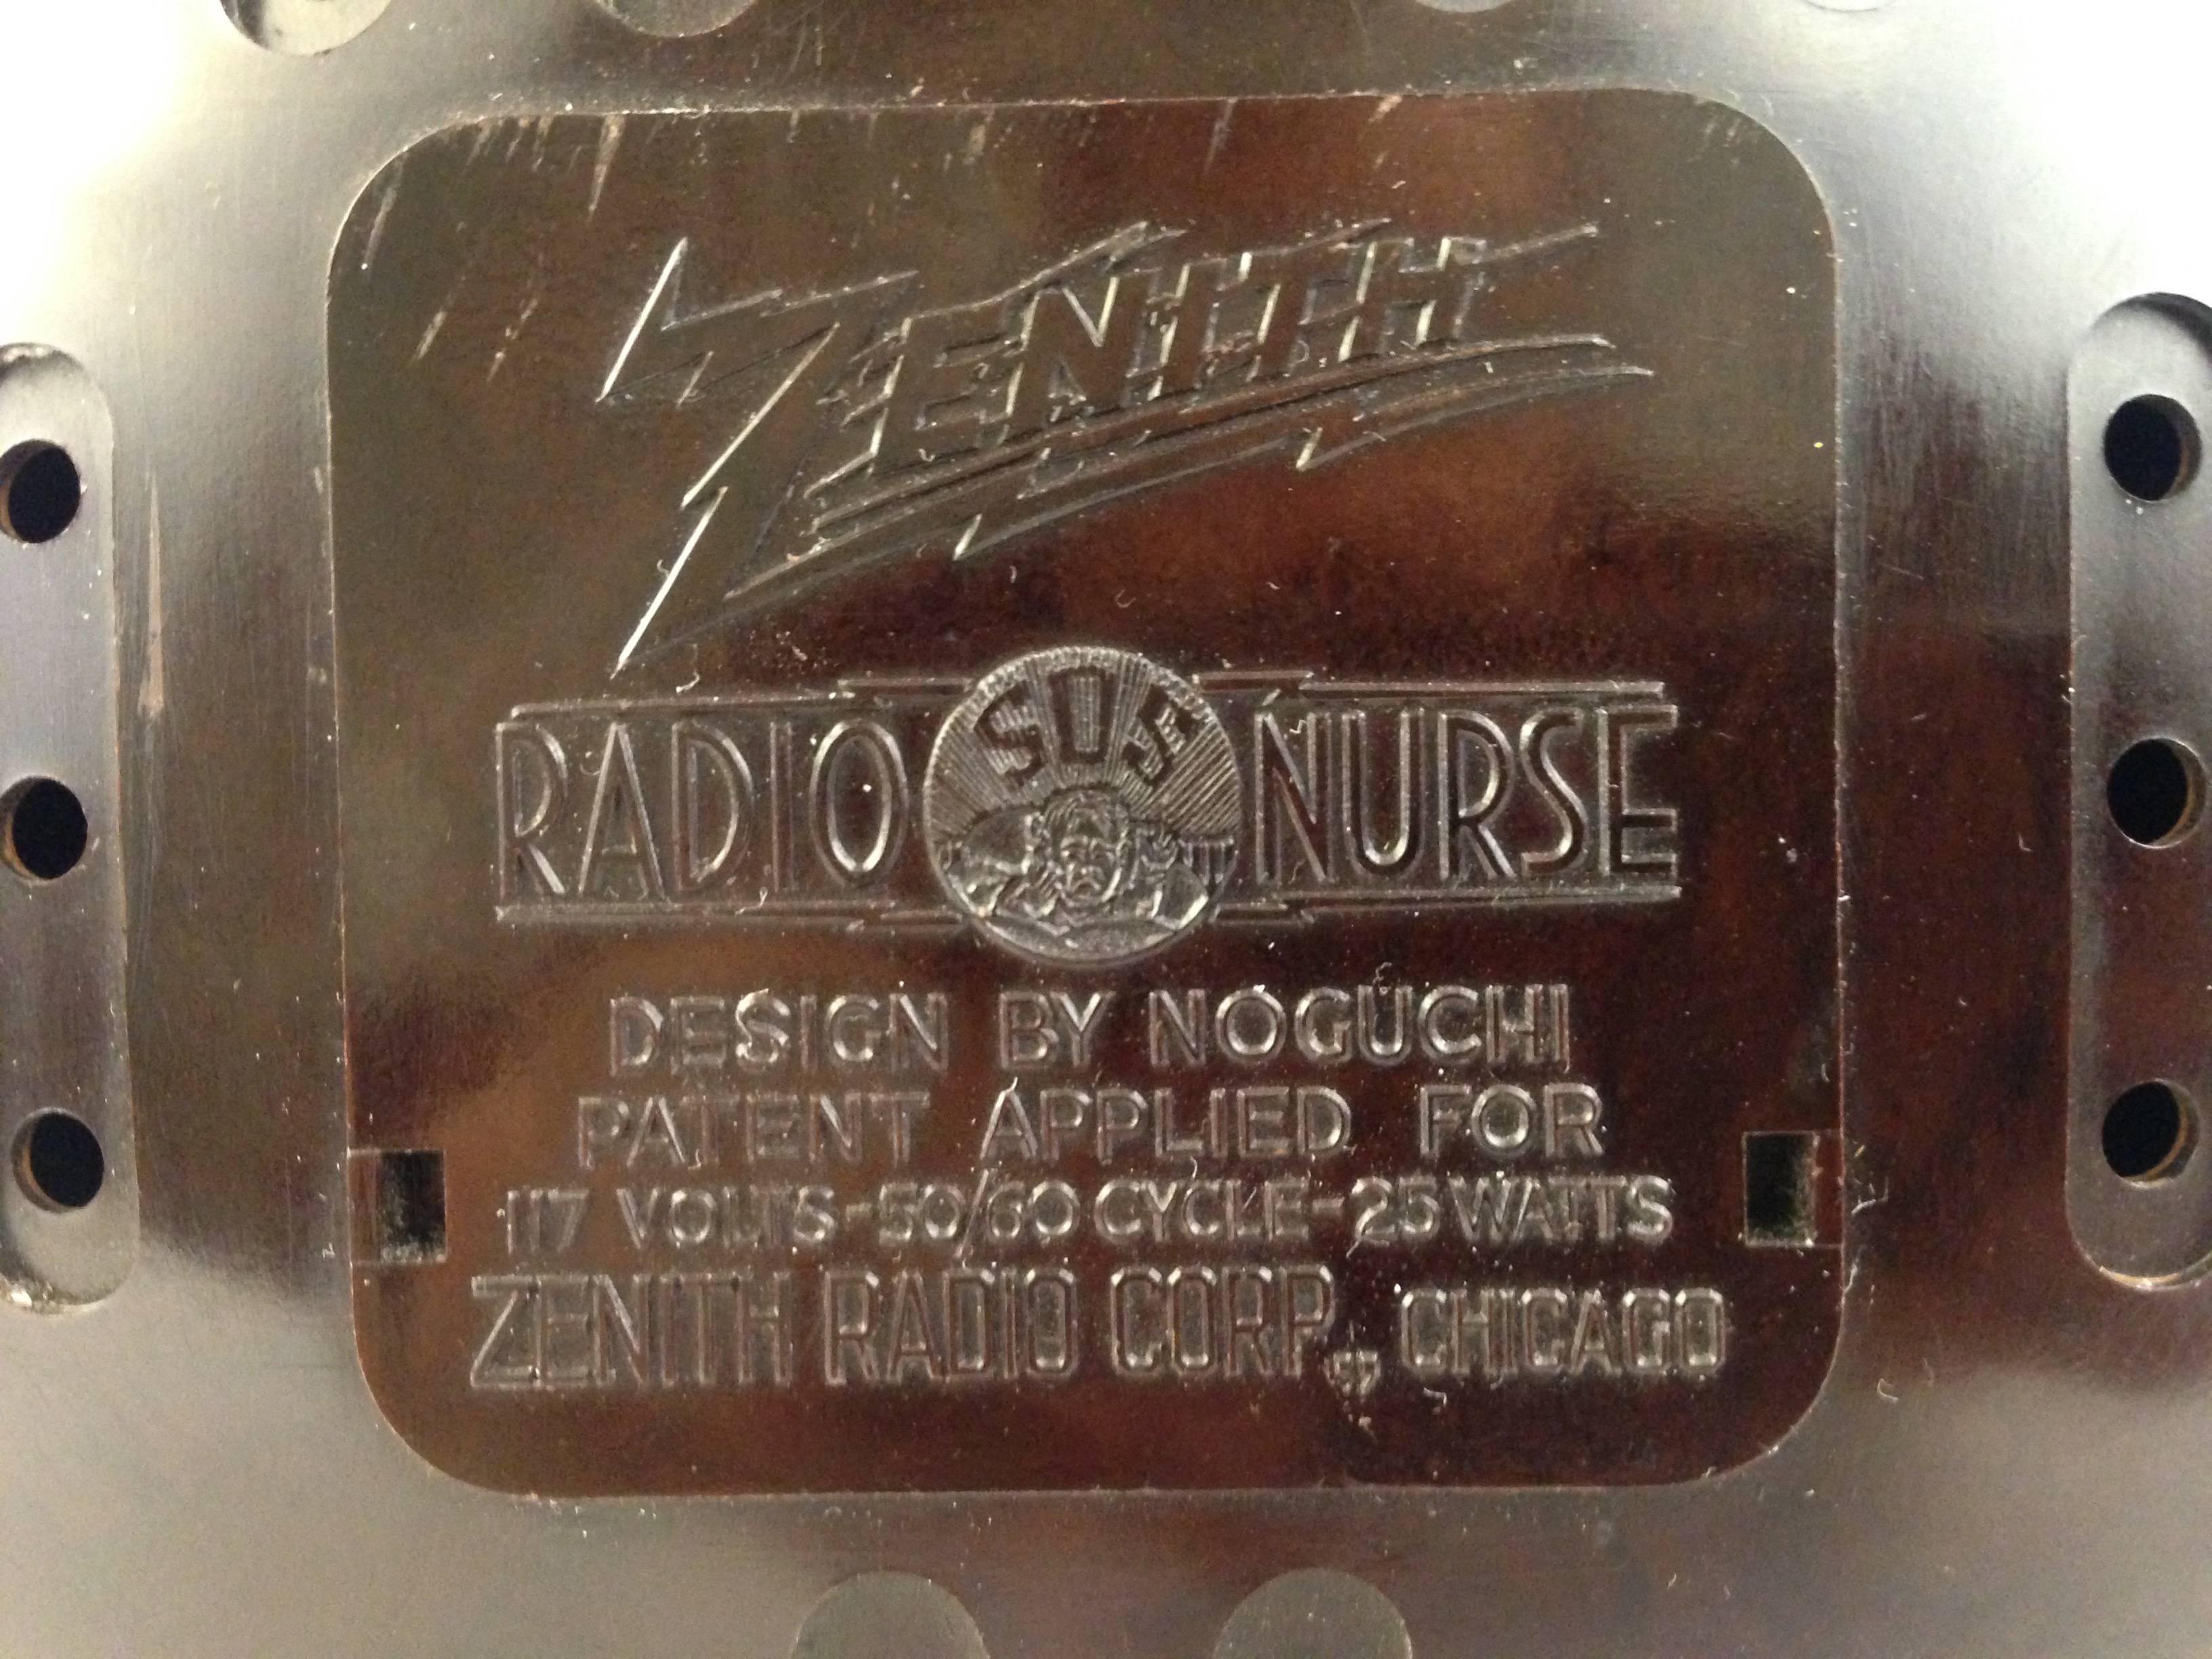 イサム・ノグチ radio nurse